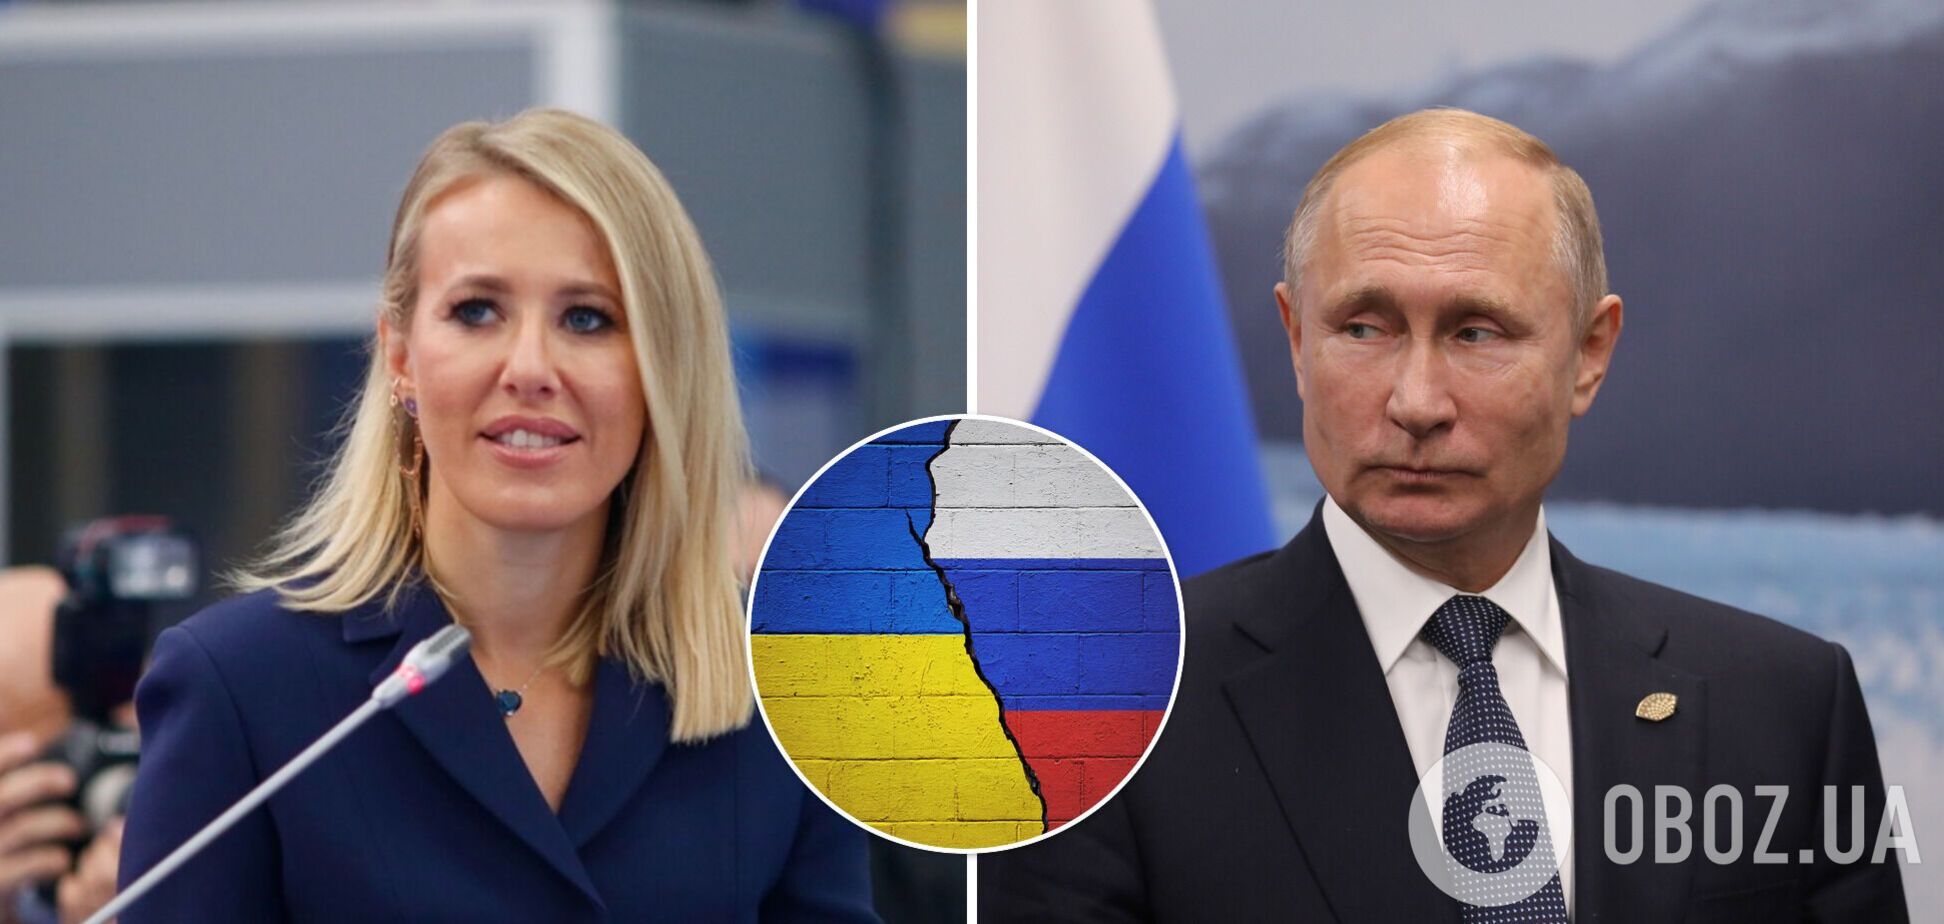 Собчак досталось в сети за пост о Путине и Украине: она намекнула, что хейтеры 'тупые'